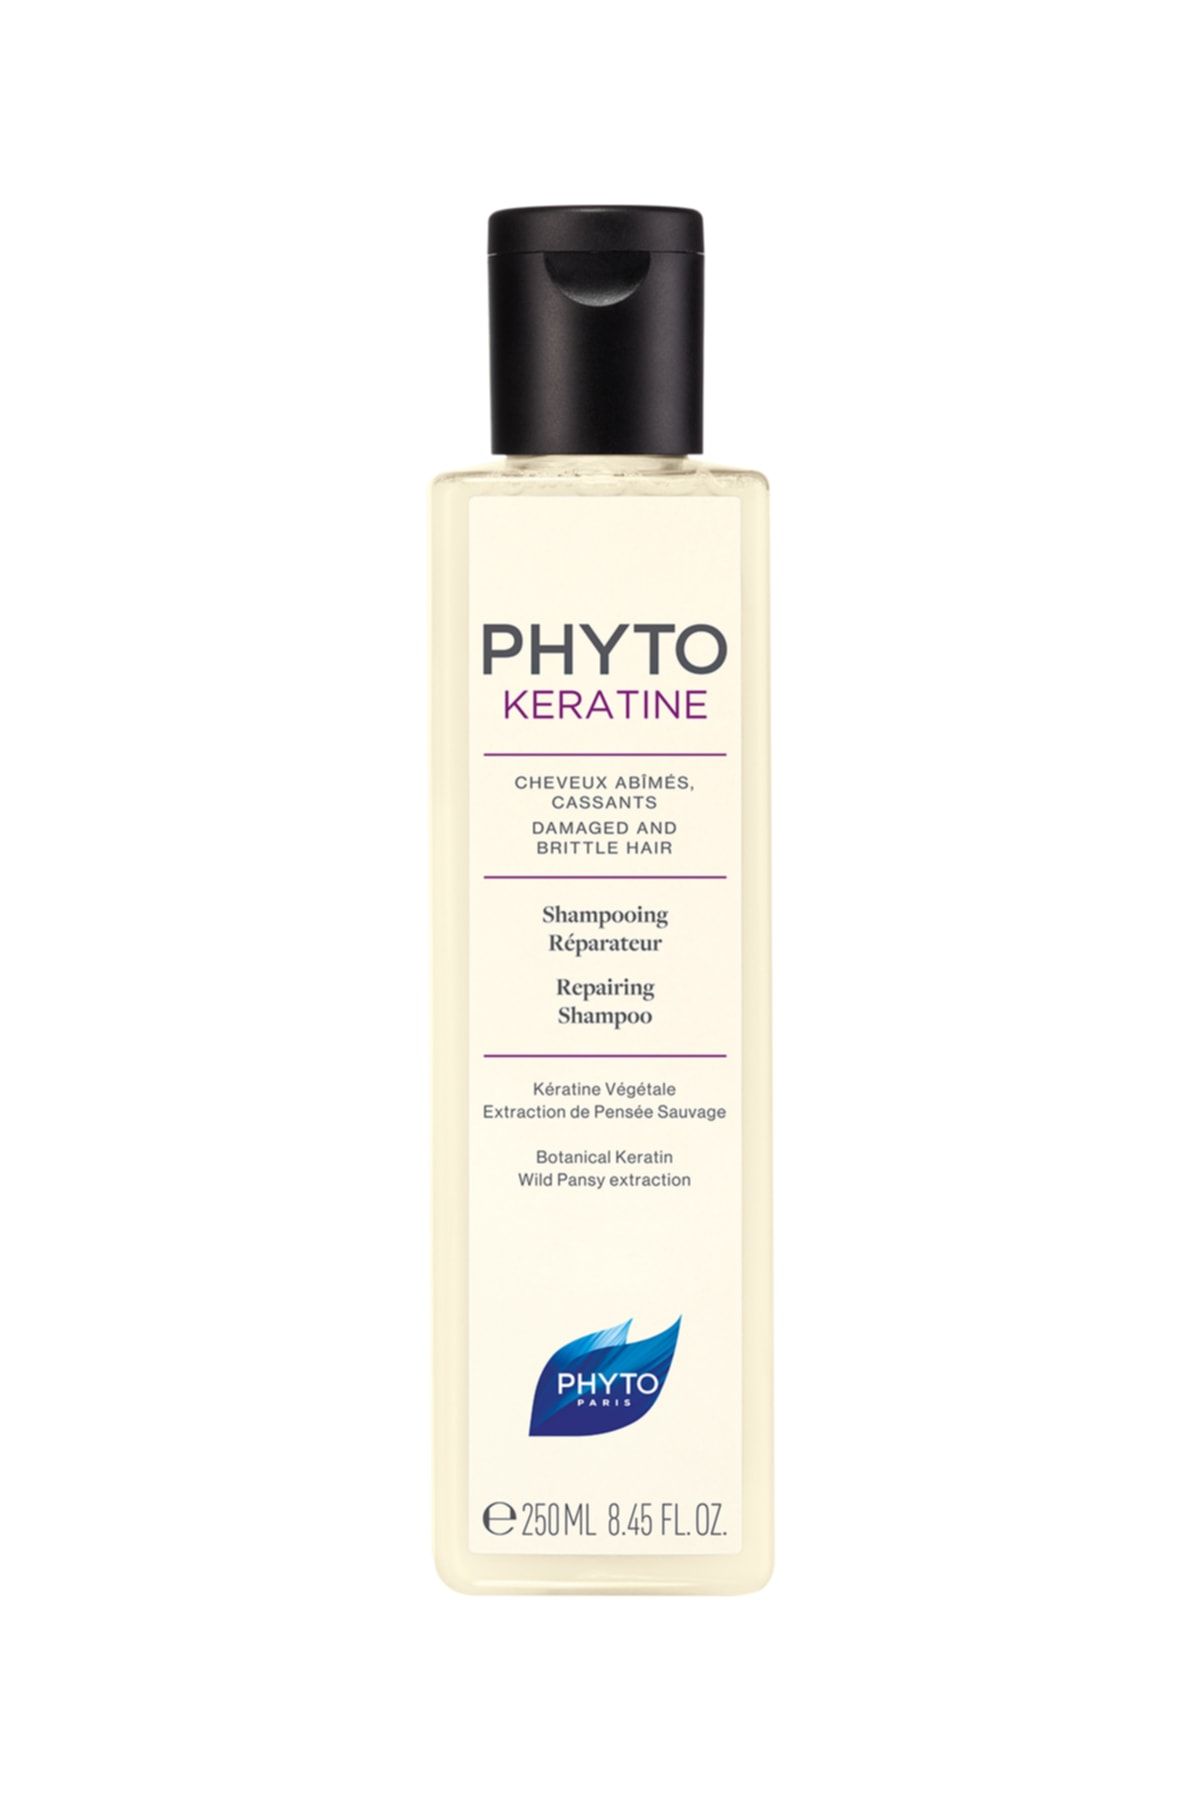 Phyto Kératıne Shampoo Yıpranmış ve Zayıf Saçlar Için Saçı Onarım Şampuanı